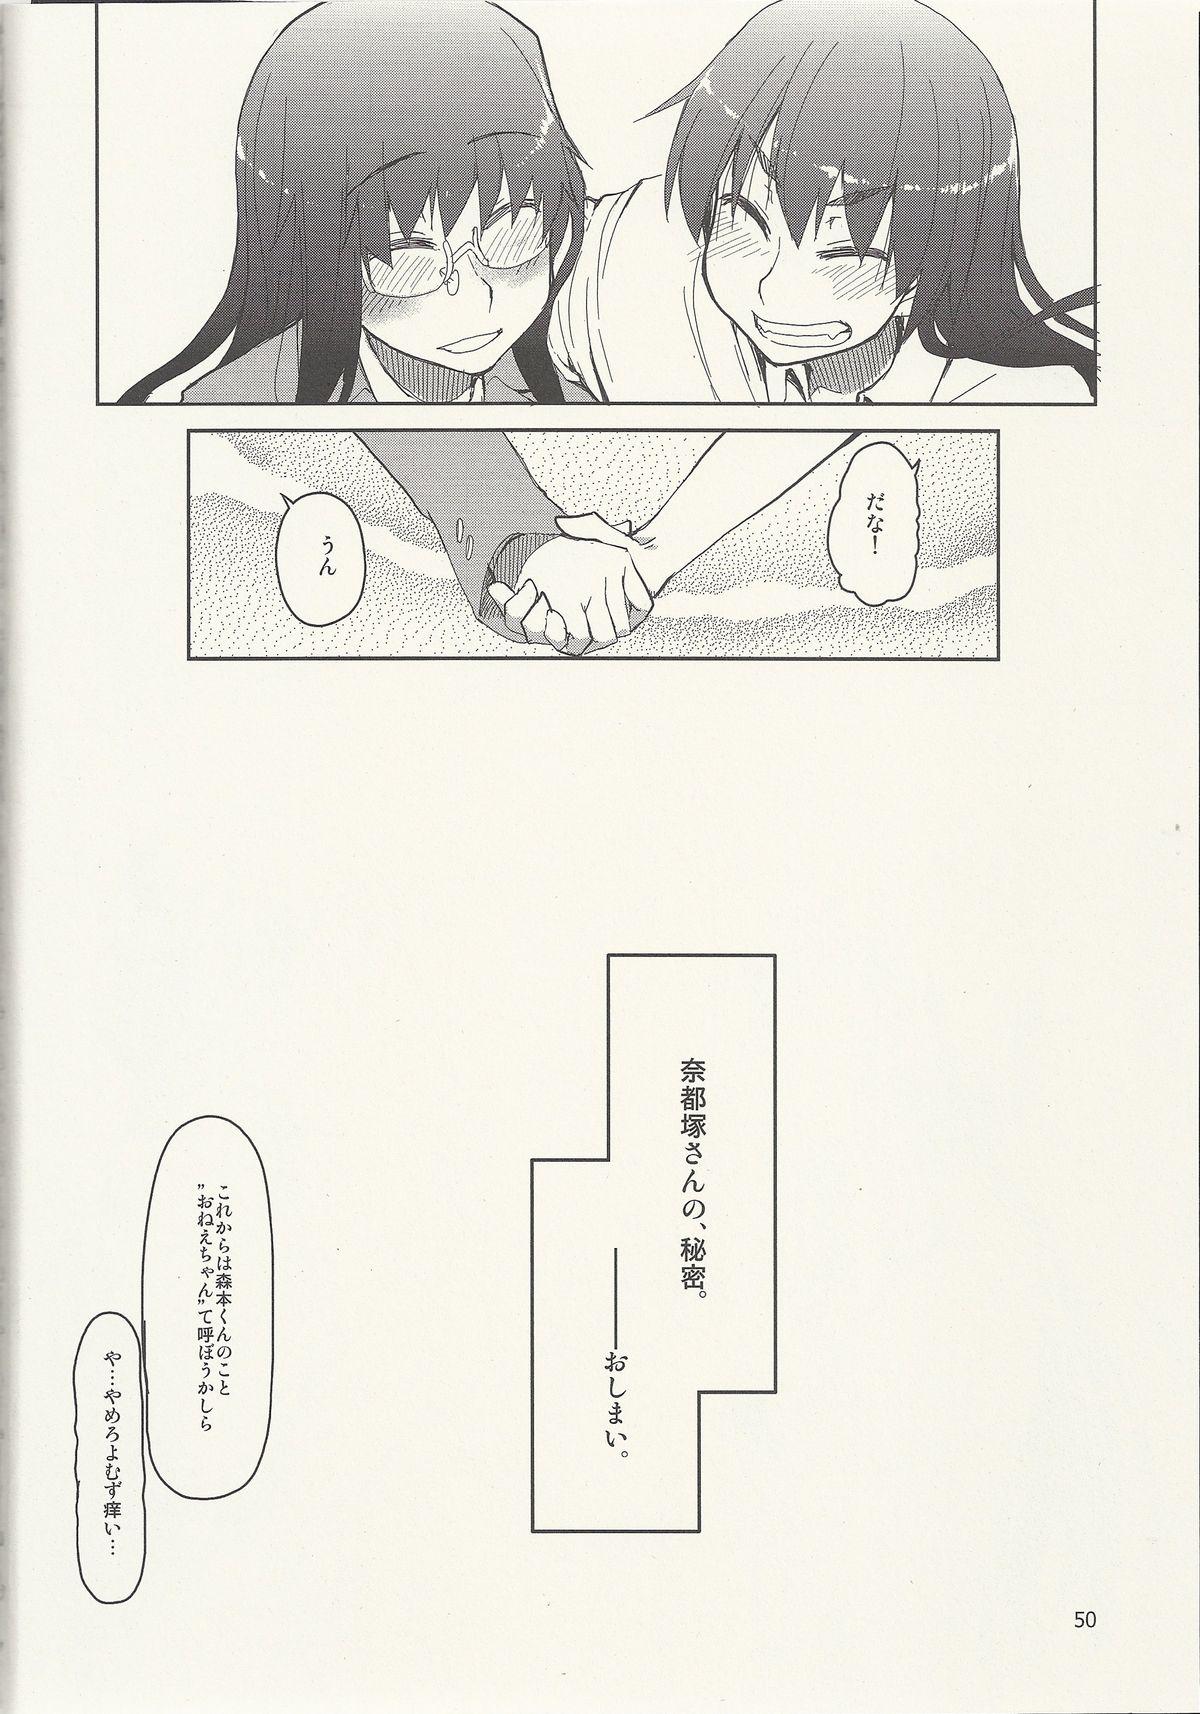 Natsuzuka-san no Himitsu. Vol. 6 Kanketsu Hen 50